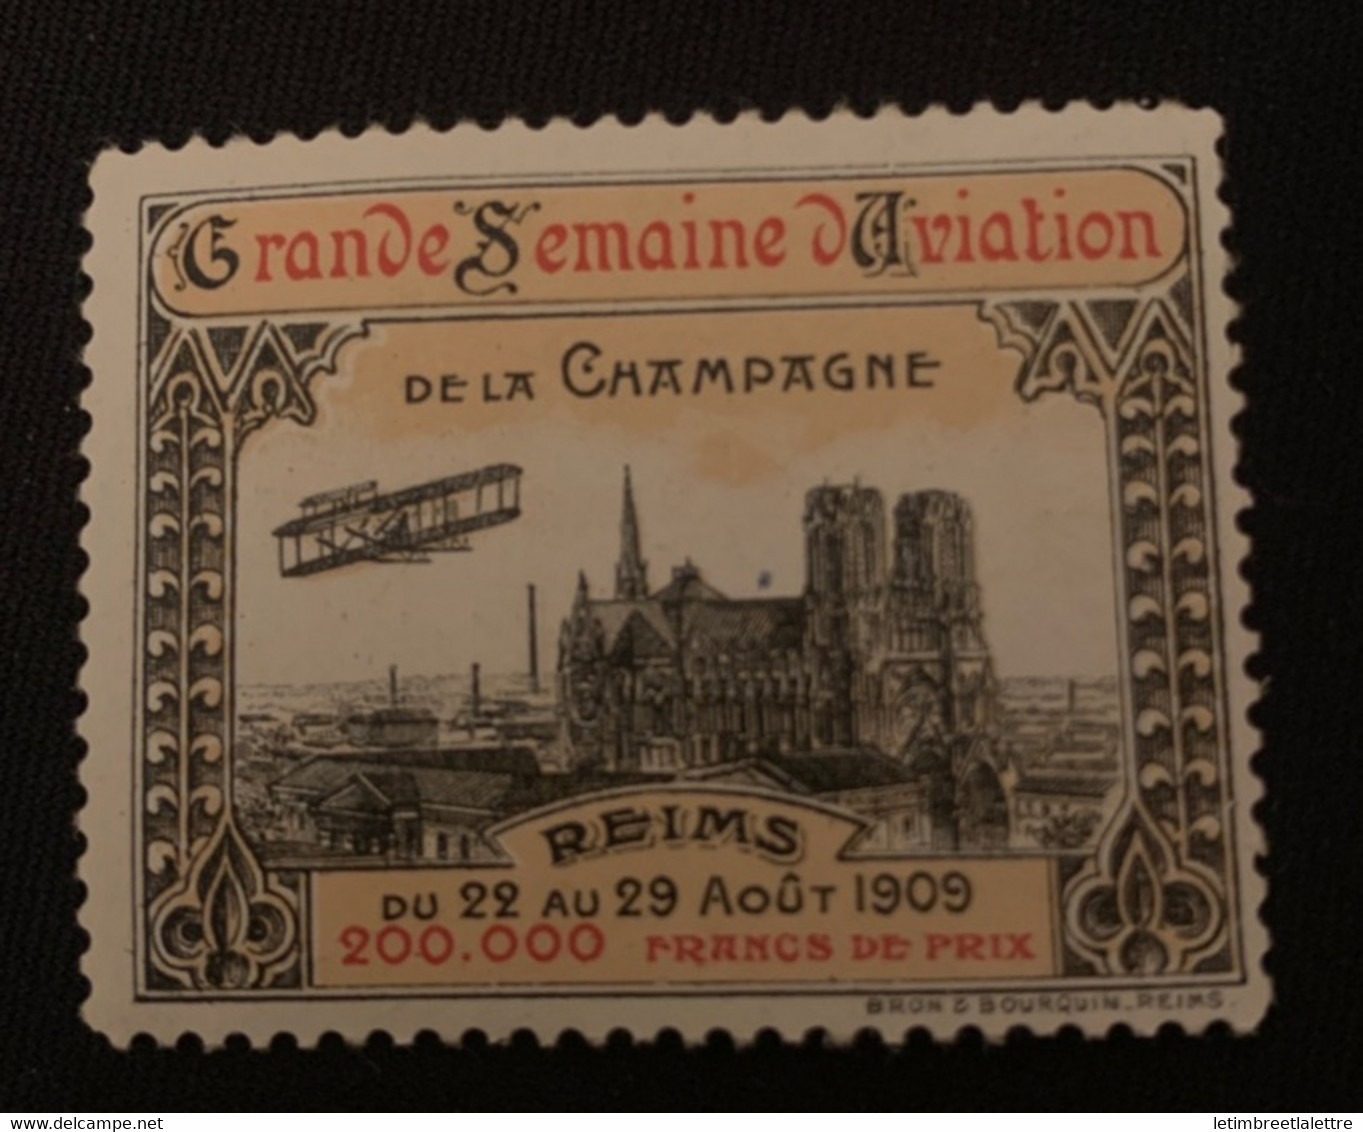 ⭐ France - Vignette - Grande Semaine D’aviation De La Campagne - Reims 1909 ⭐ - Aviazione